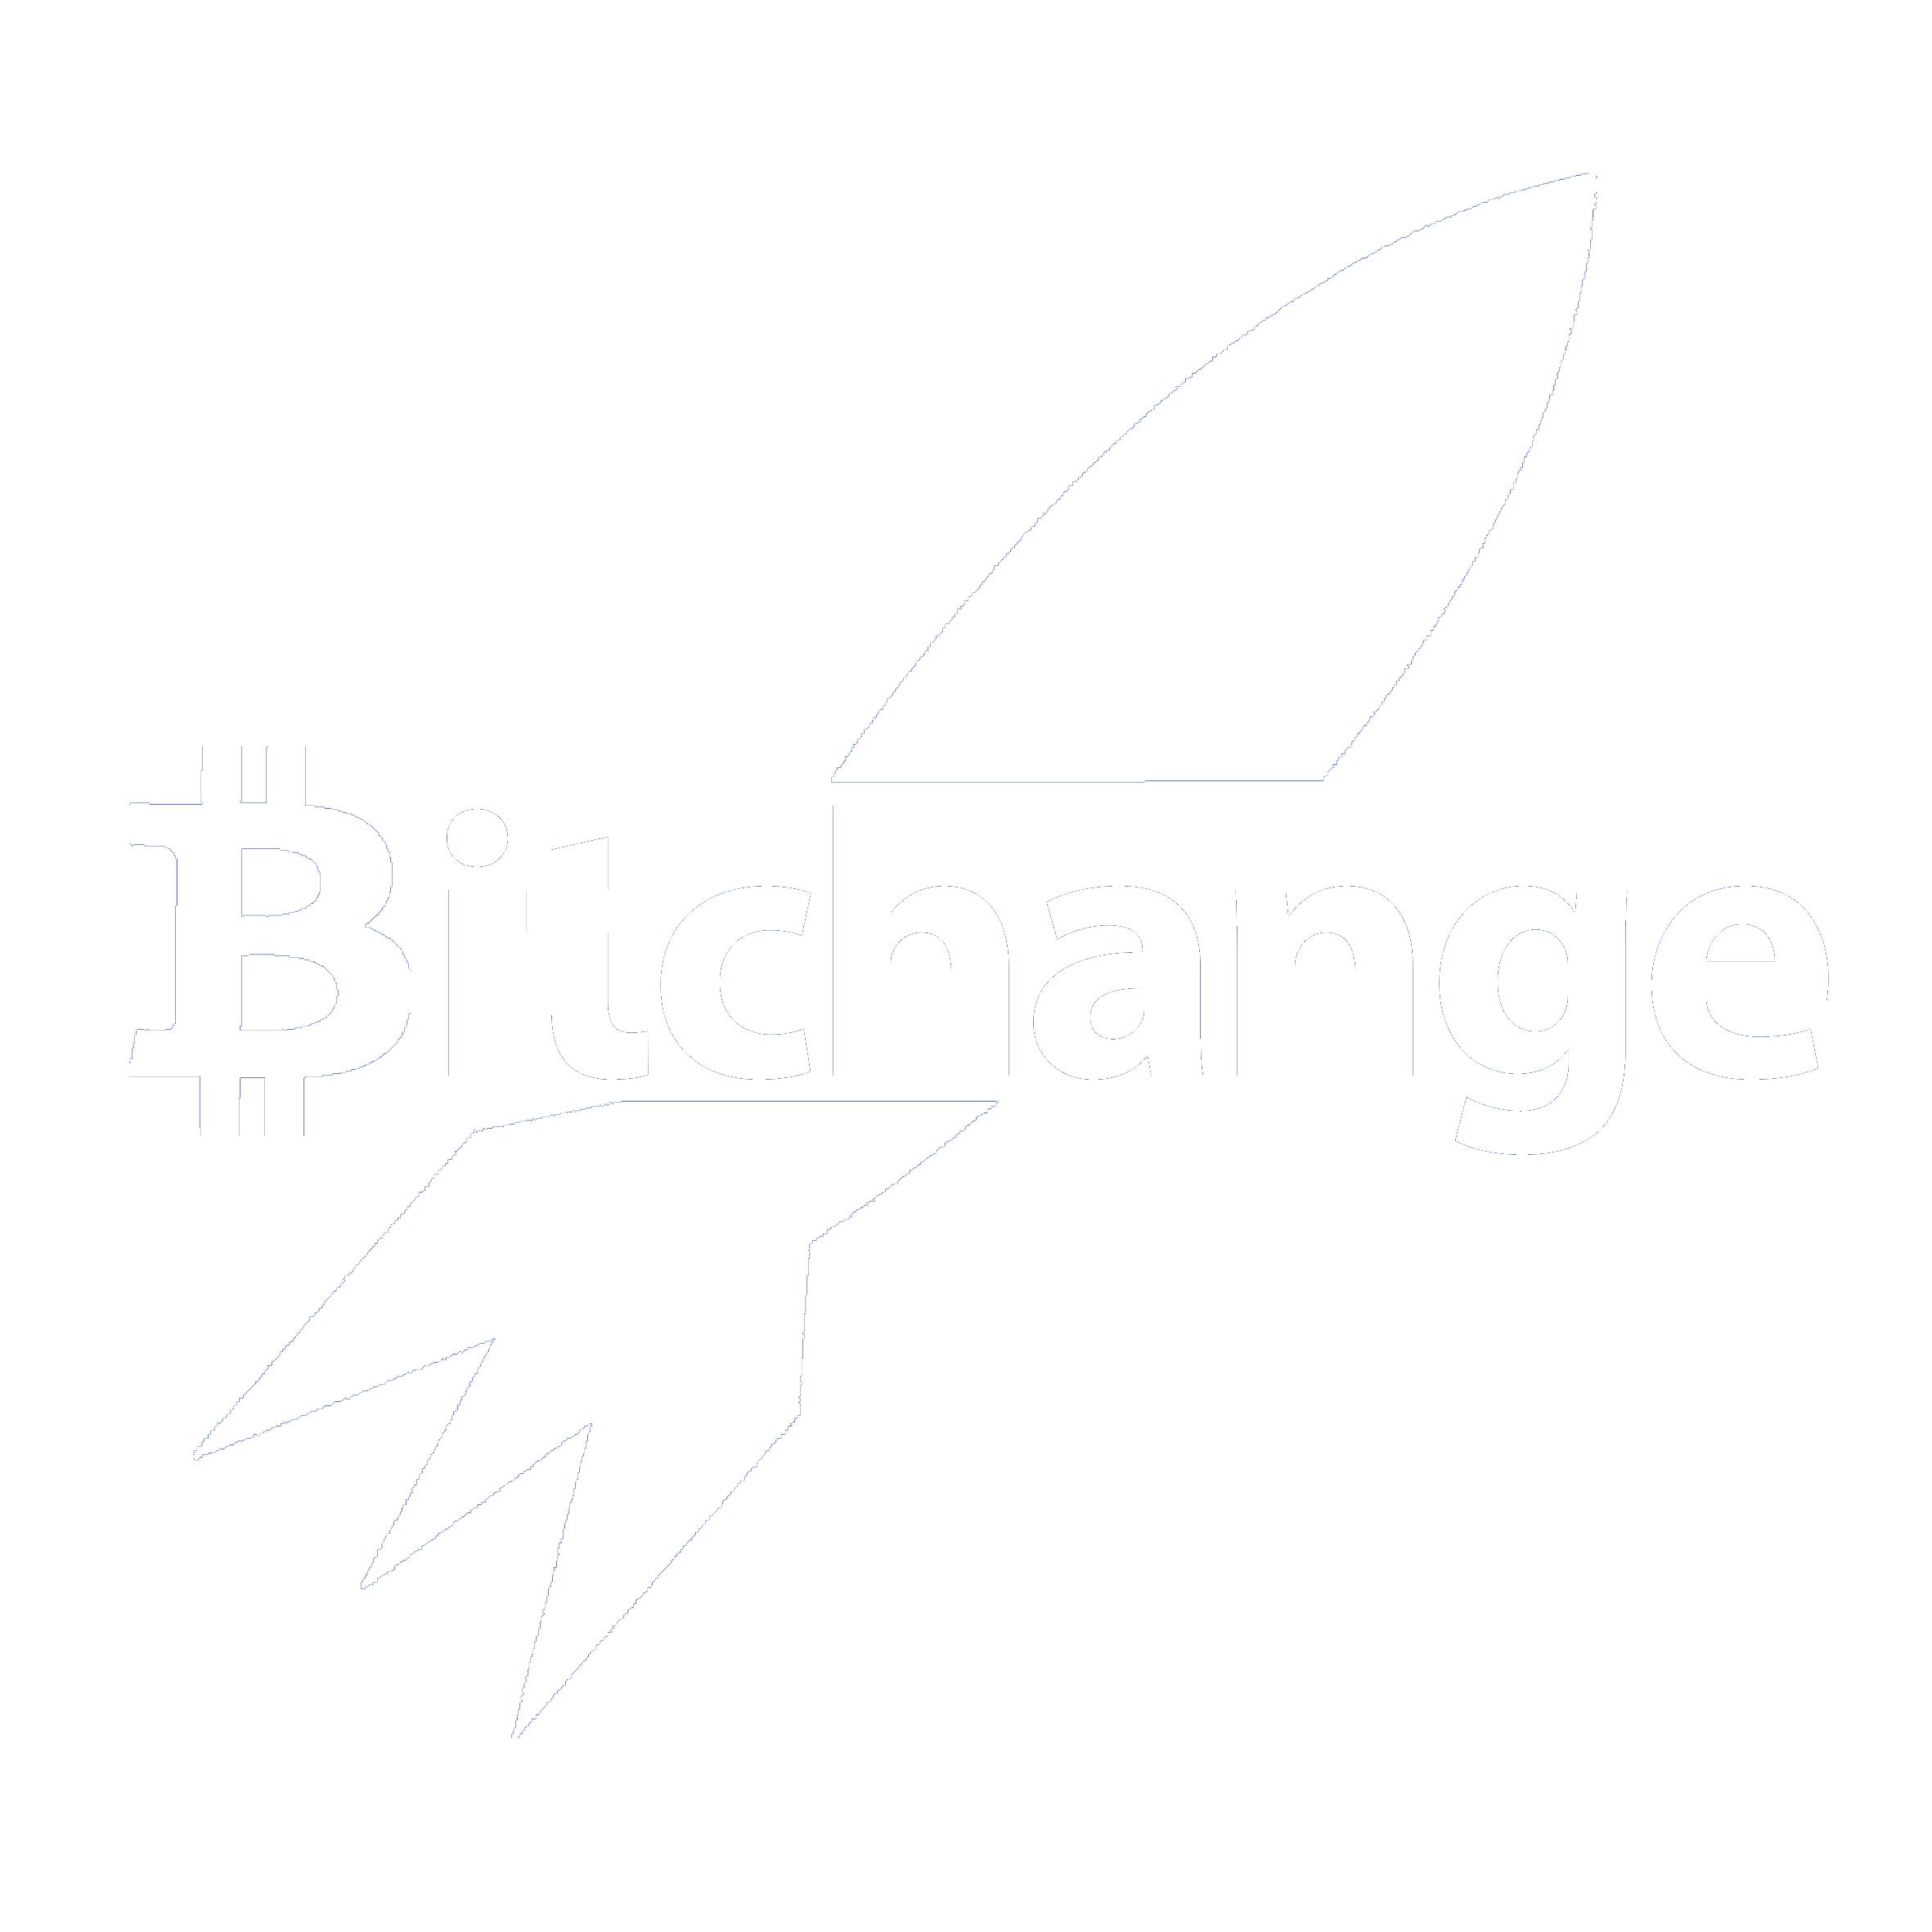 Bitchange